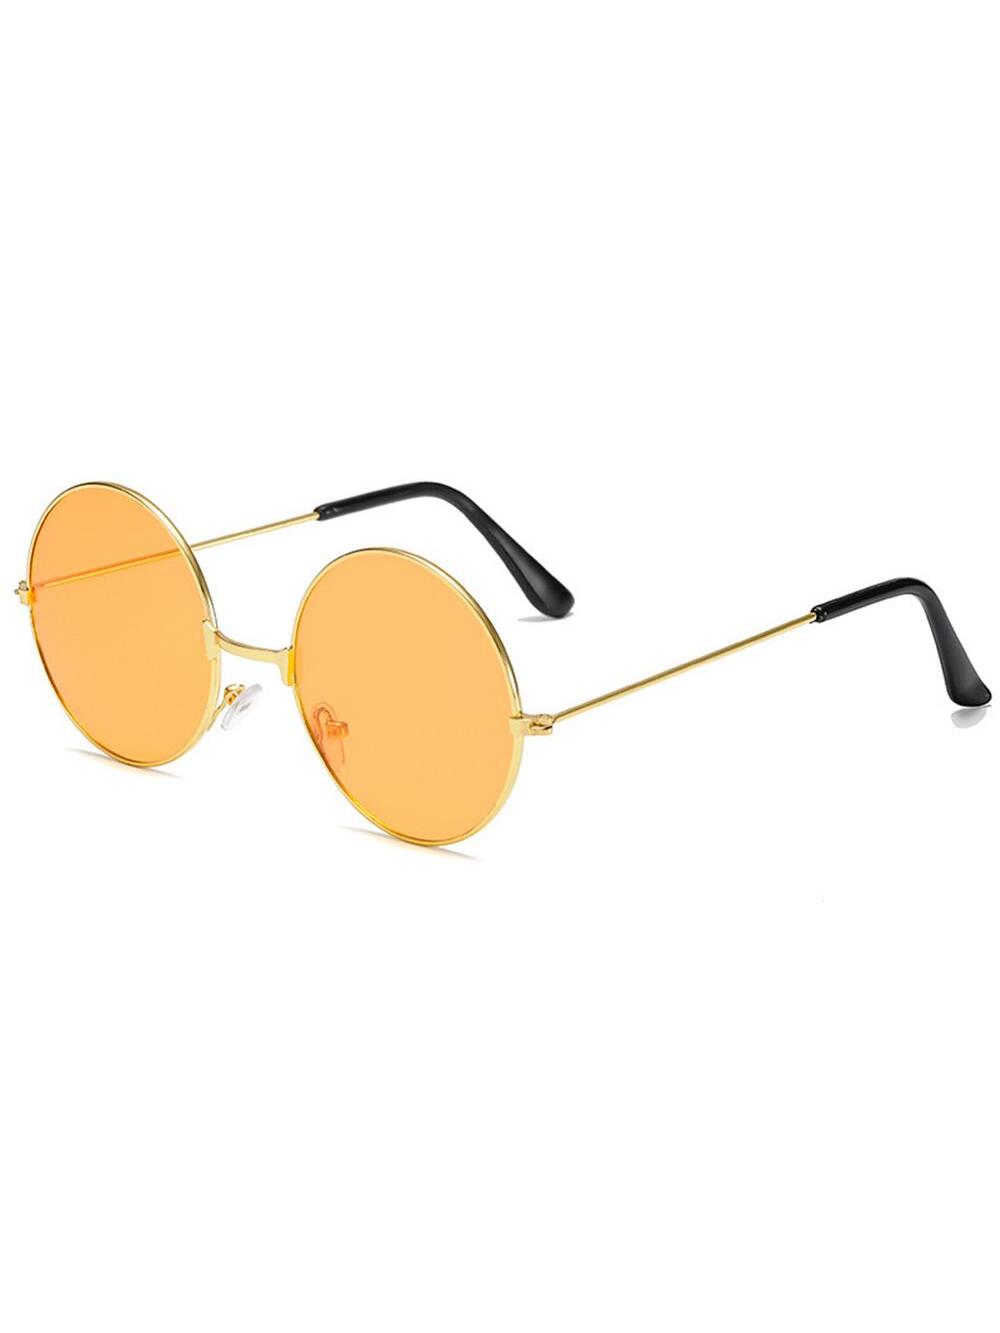 Ретро круглые солнцезащитные очки в стиле хиппи, апельсин